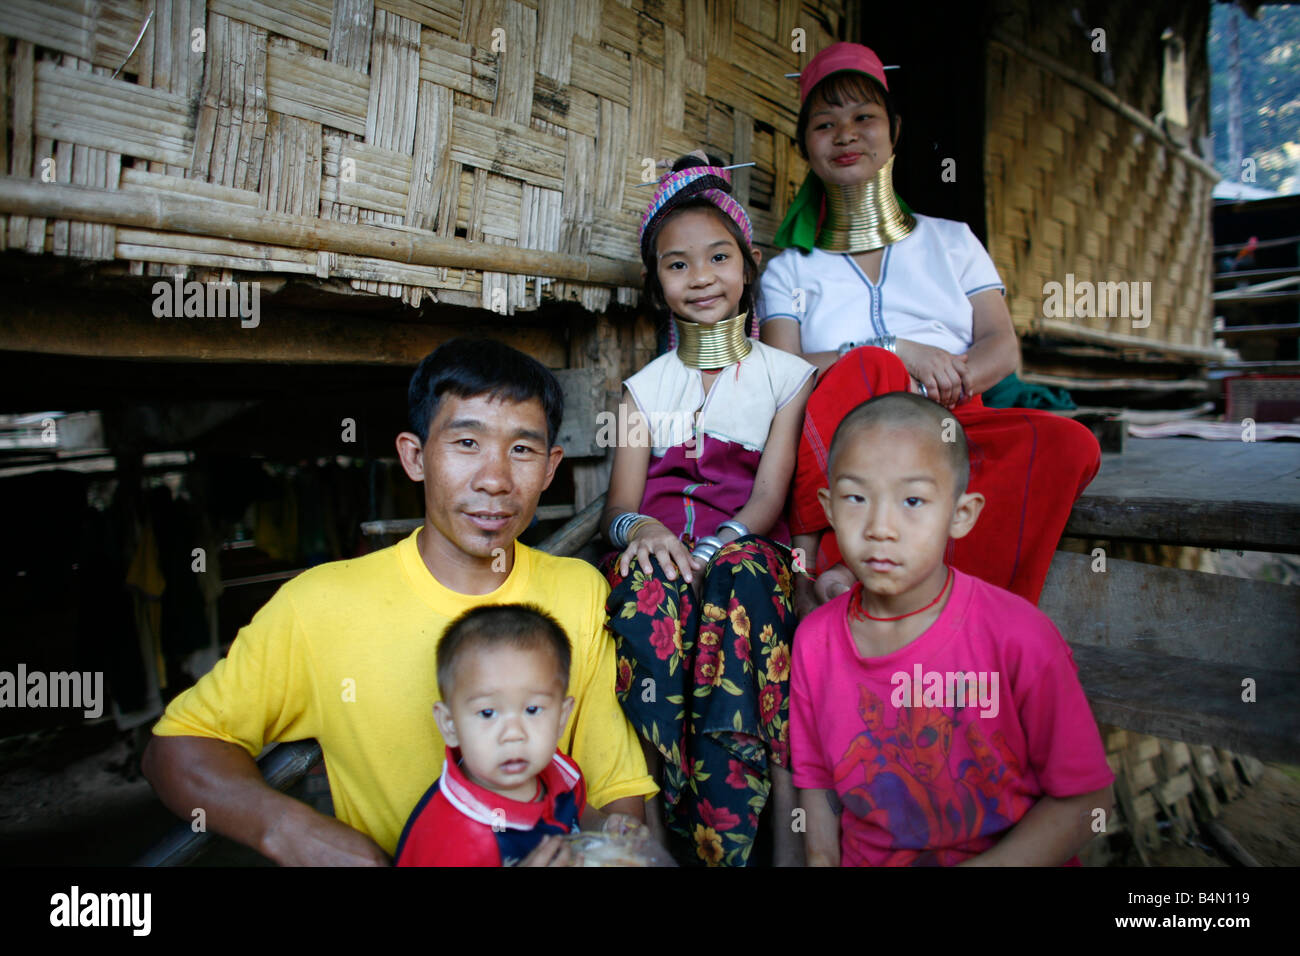 Eine Longneck-Familie Leben im Flüchtlingslager rund 300 birmanischen Flüchtlinge in Thailand Mitglieder der indigenen Gruppe bekannt sind als die Longnecks, die größte der drei Dörfer wo live Longnecks Nai Soi genannt befindet sich in der Nähe von Mae Hong Son Stadt longnecks, Metallringe auf den Hals tragen, die das Schlüsselbein nach unten drücken und den Hals zu verlängern sind eine touristische Attraktion Touristen besuchen Nai Soi zu fotografieren die Longnecks und ihr Kunsthandwerk kaufen die Dörfer werden von Menschenrechtsorganisationen als menschliche Zoos kritisiert. Stockfoto